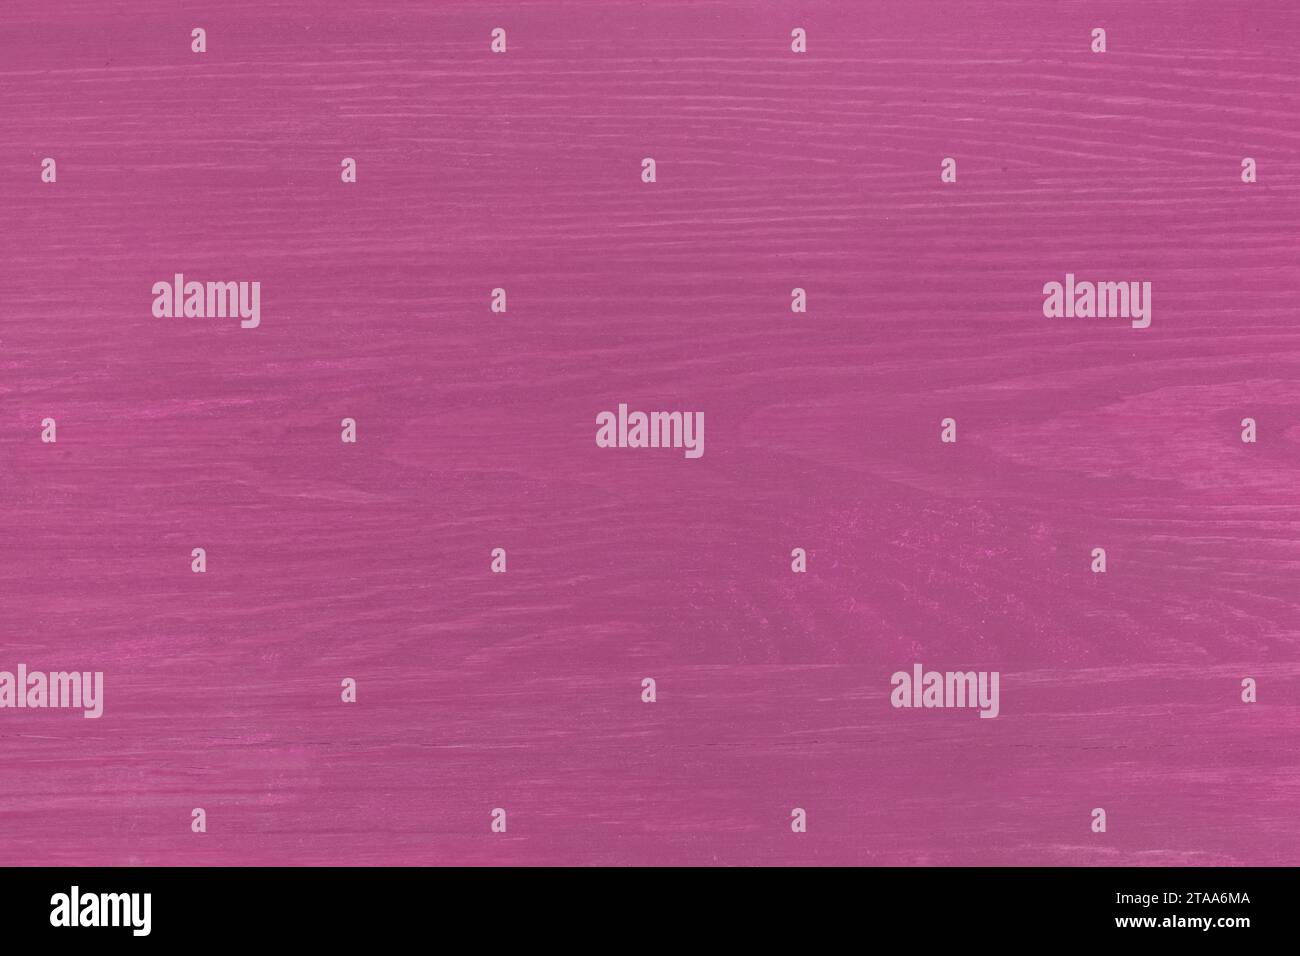 Holzbretter Textur in purpurrosa Farbe Farbe Hintergrund Dielenmuster Holzoberfläche leer leer leer. Stockfoto